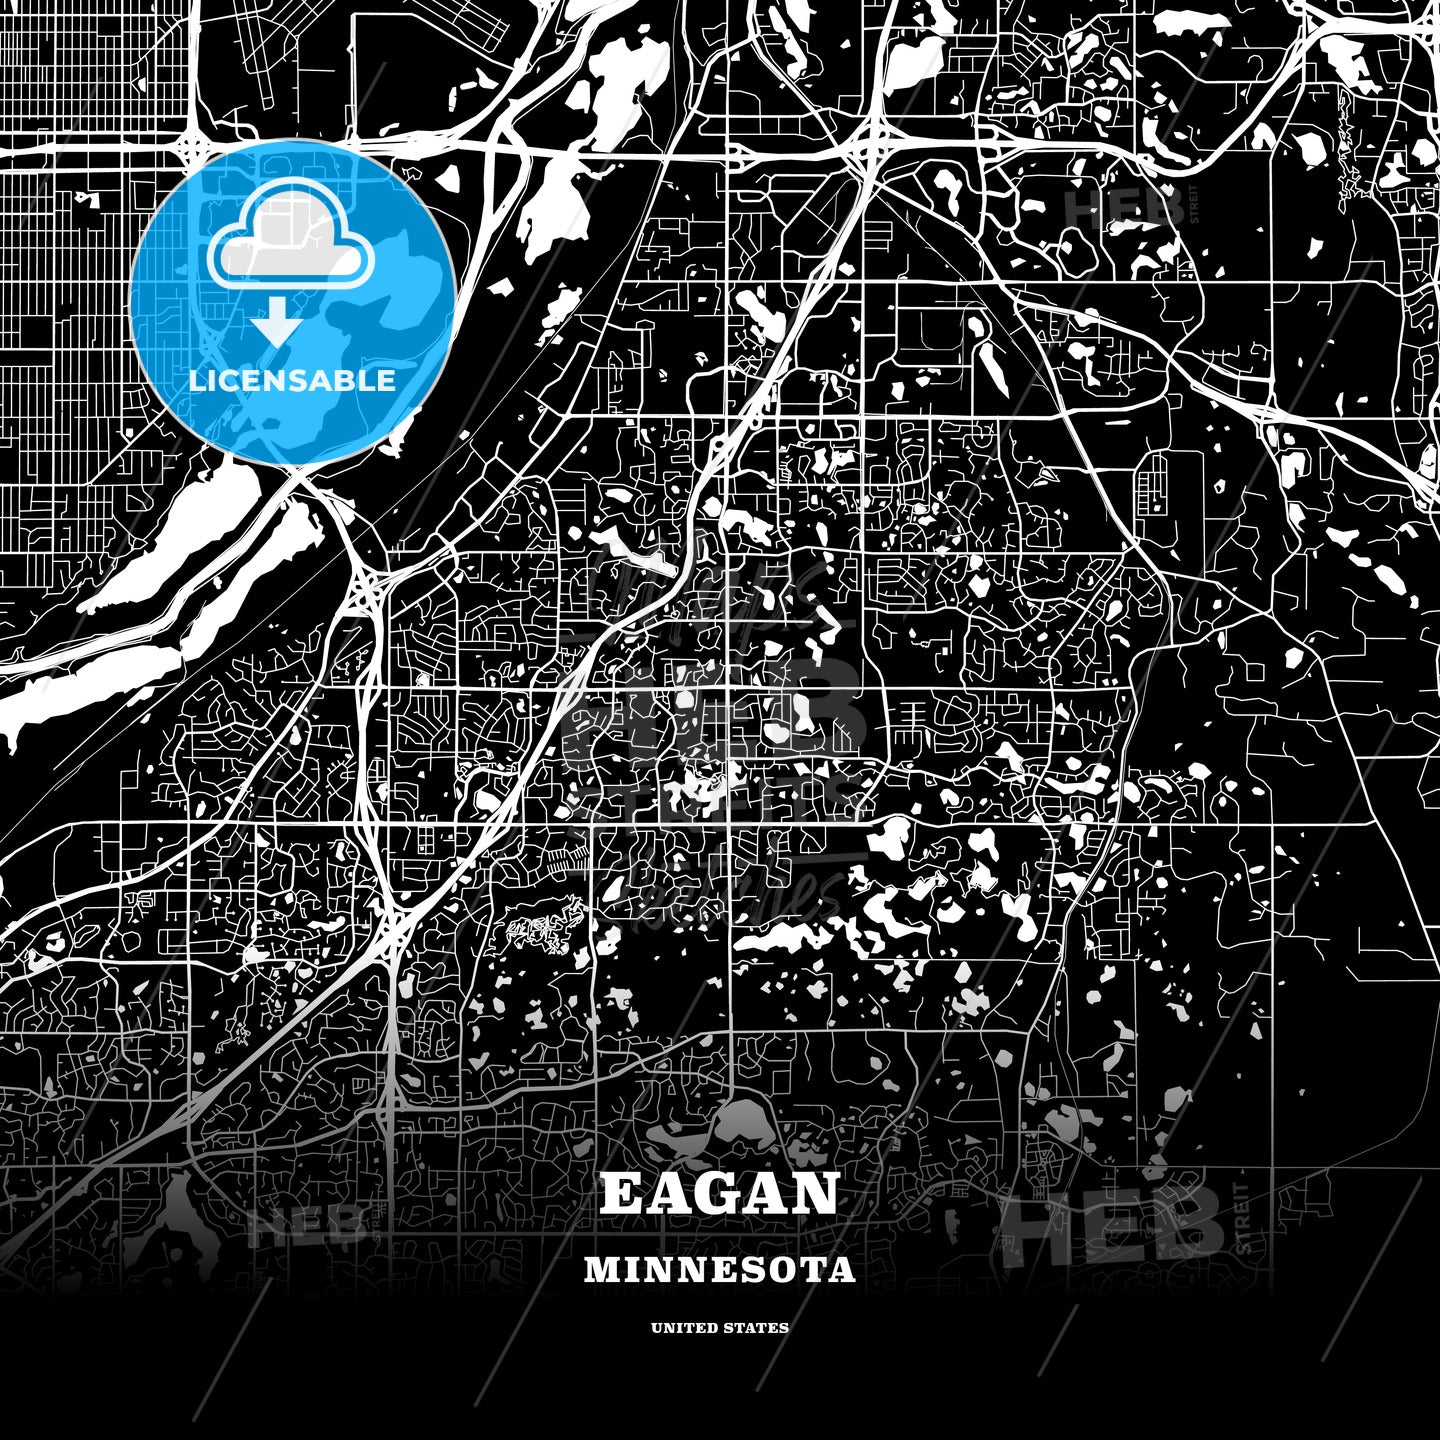 Eagan, Minnesota, USA map